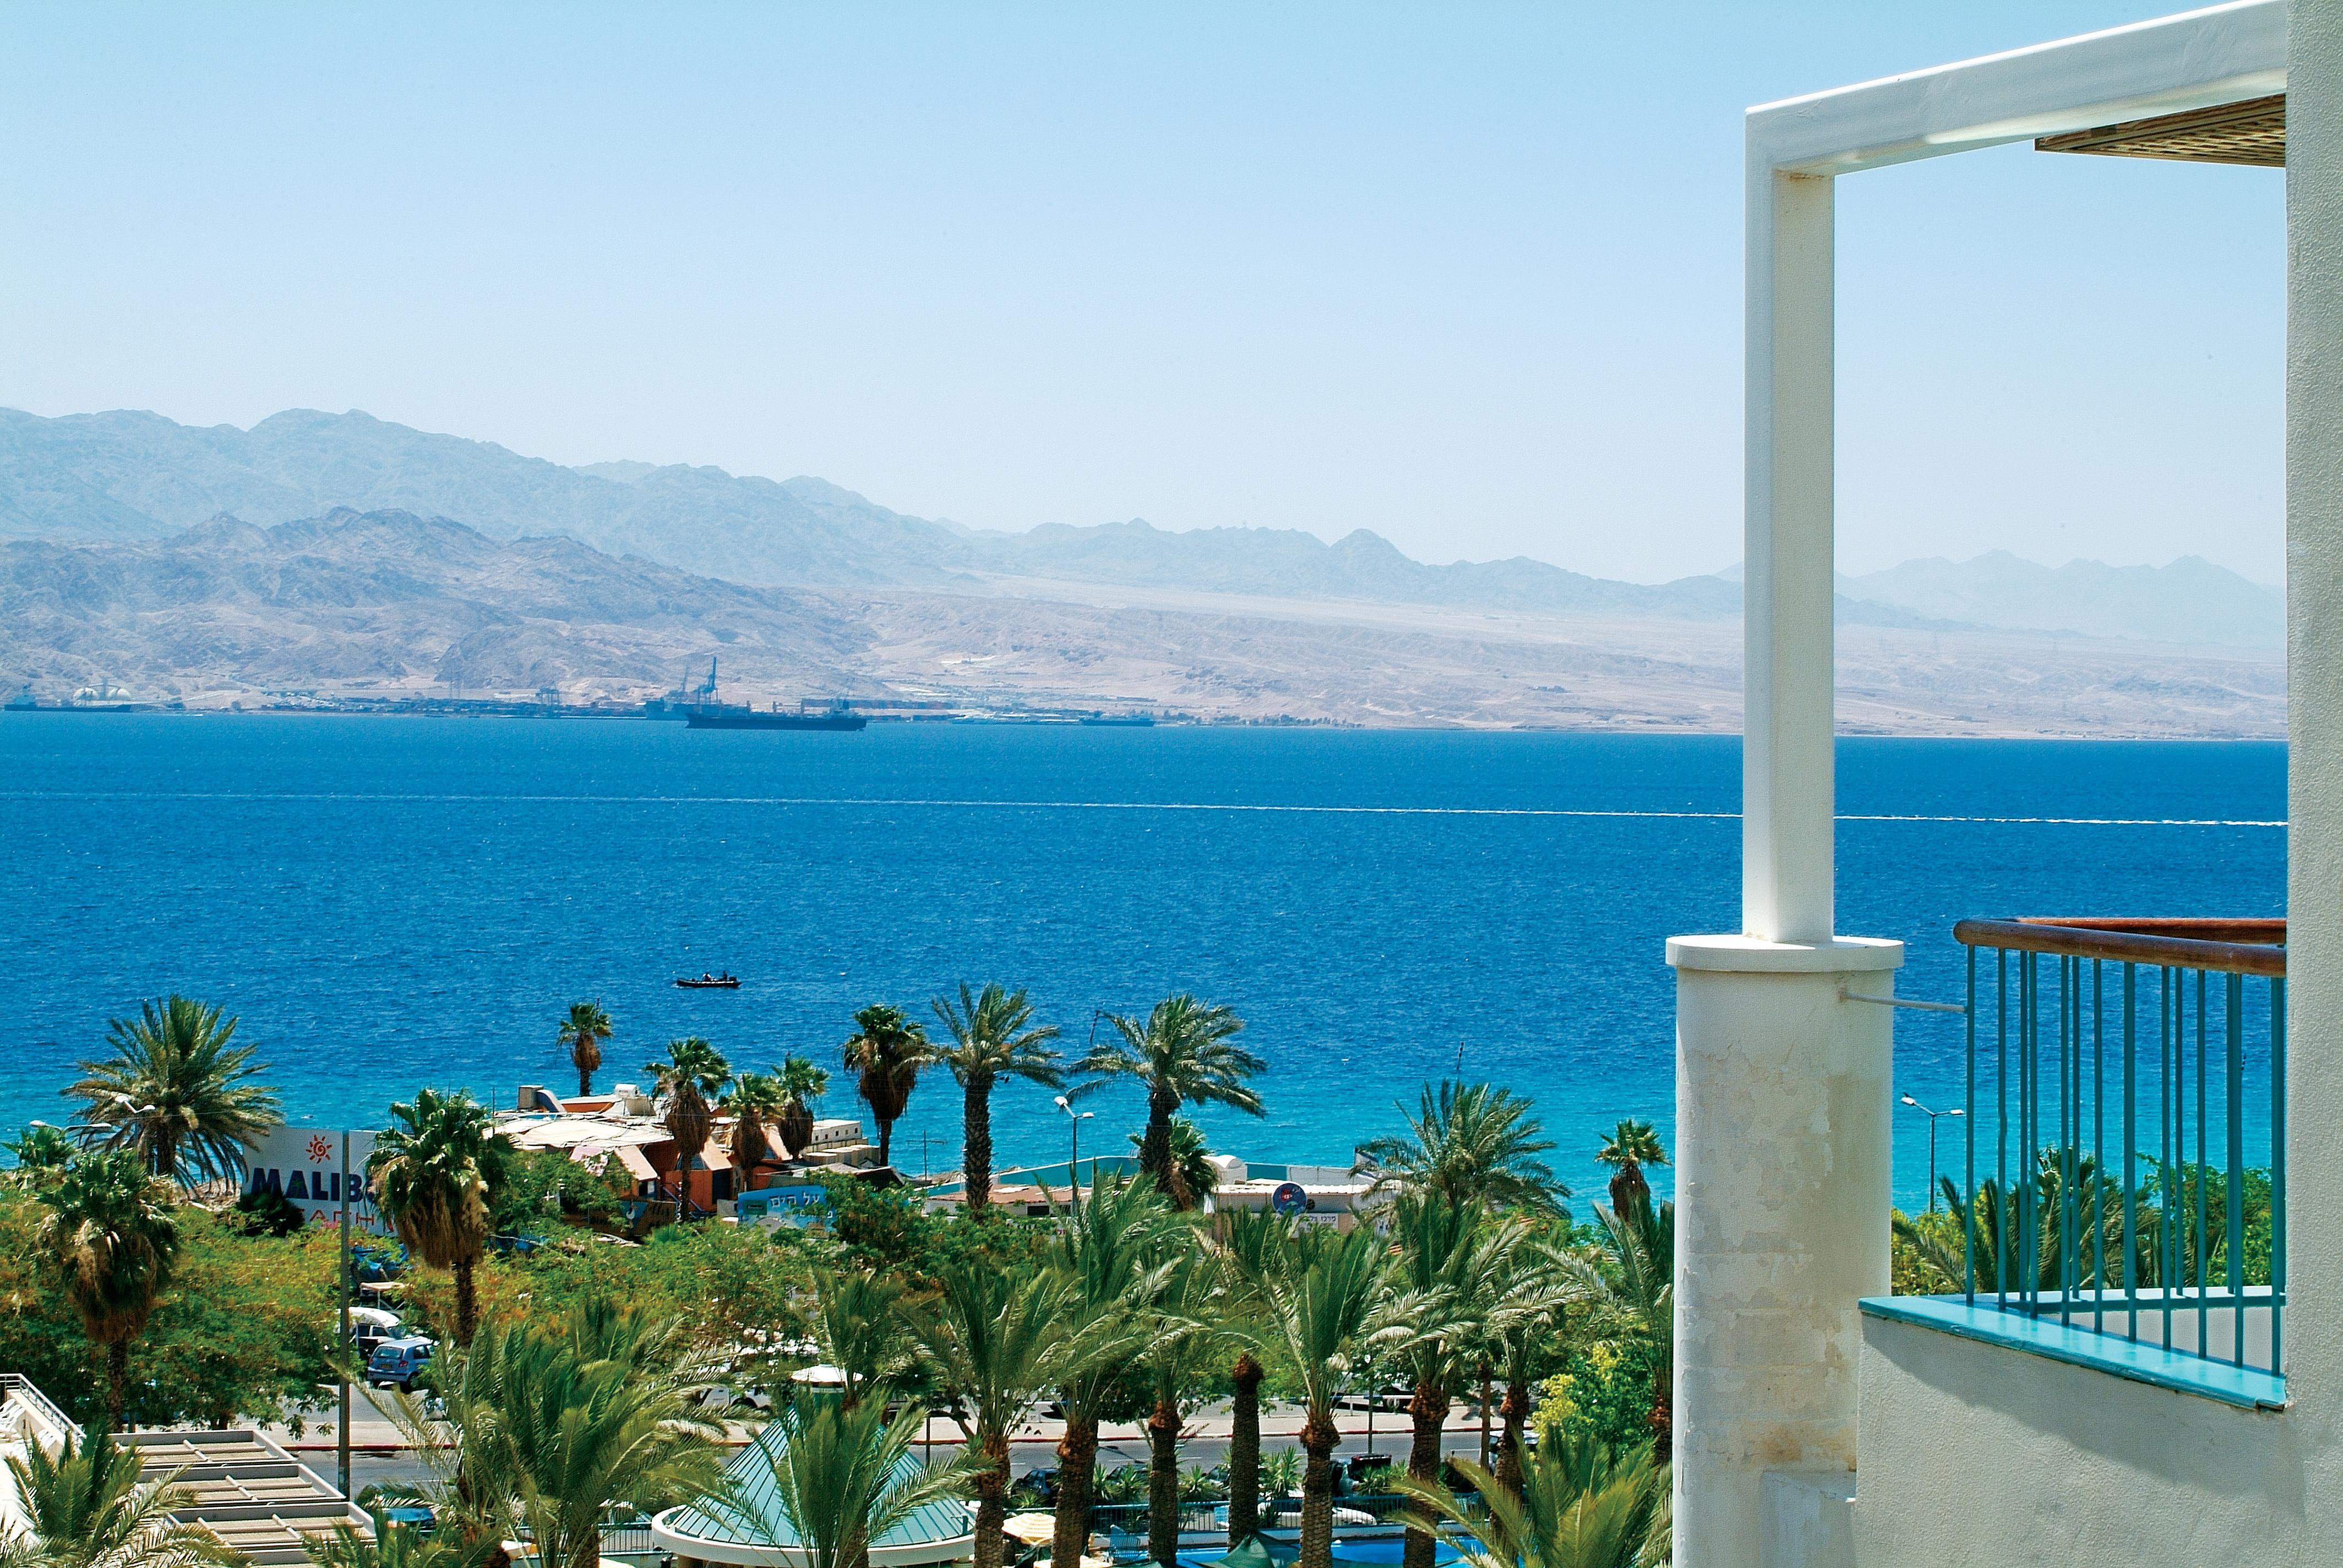 Isrotel Yam Suf Hotel Eilat - Sea View | Eilat.com